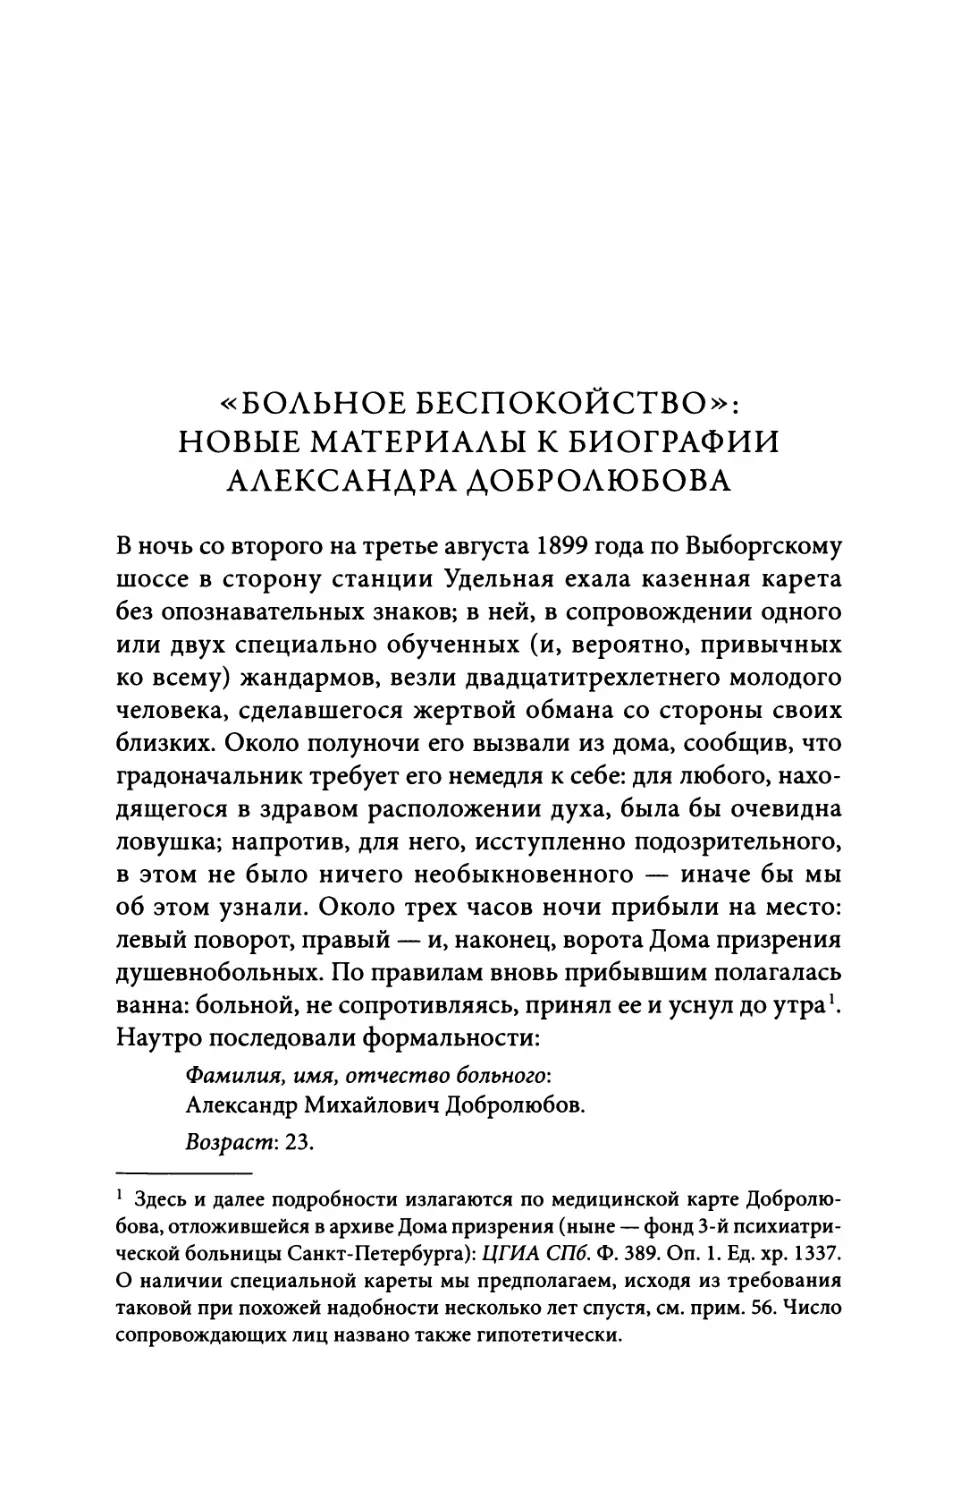 «Больное беспокойство»: новые материалы к биографии Александра Добролюбова